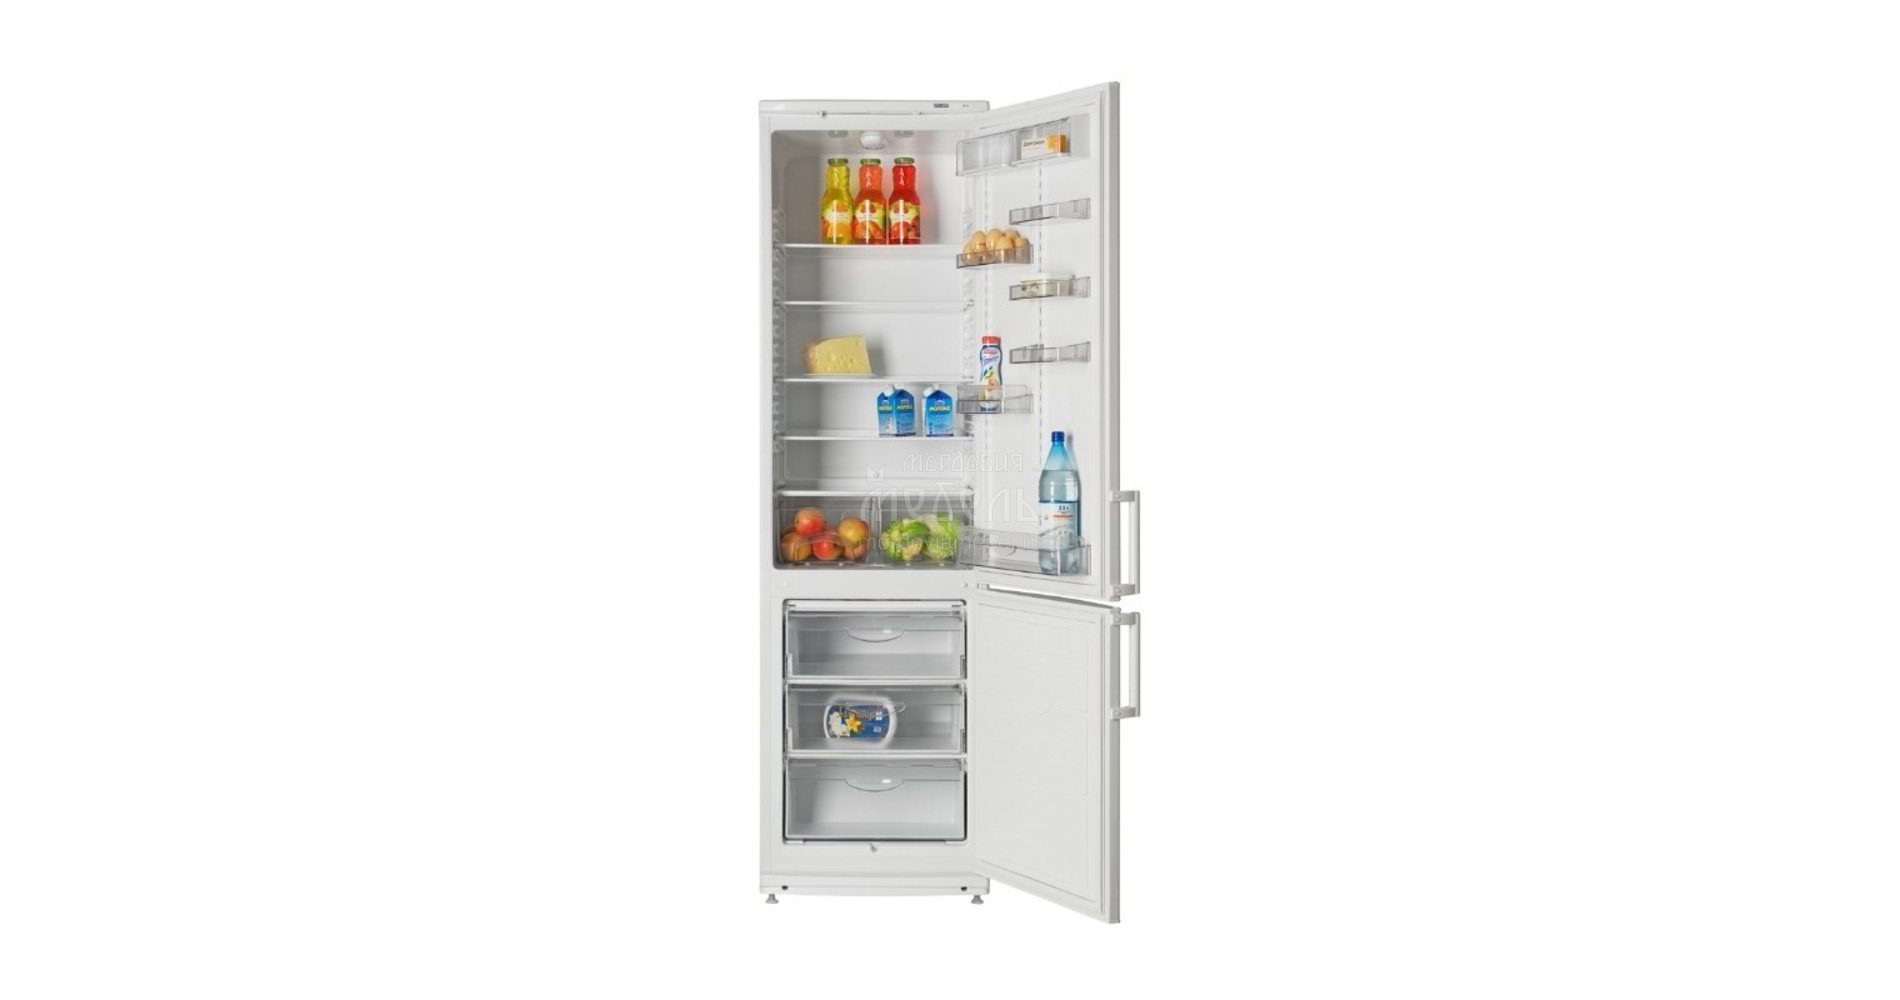 Спб купить холодильник недорого двухкамерный. ATLANT хм 6025-031. Холодильник Атлант 4012-022. Холодильник Атлант хм 4012-022. Холодильник XM 6025-031 ATLANT.